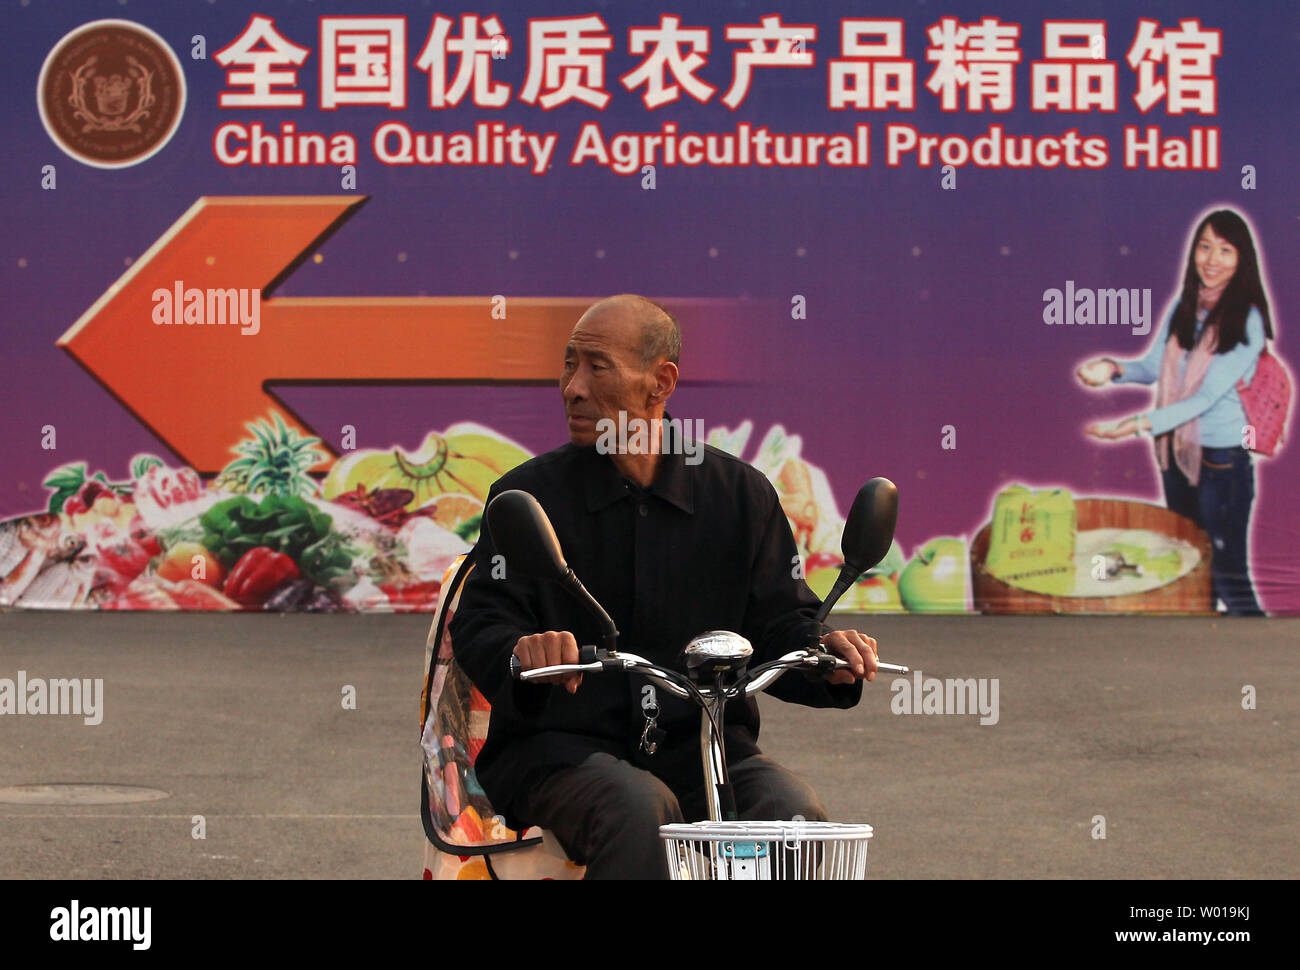 Ein chinesischer Mann sich eine Werbung für eine landwirtschaftliche Messe in Peking am 25. November 2015. Es gibt eine zunehmende Zahl von kleinen, boutique Farmen und organischen Bauernhöfen rund um die Hauptstadt Chinas, die chinesische Nachfrage gesünder landwirtschaftliche Produkte. Foto von Stephen Rasierer/UPI Stockfoto